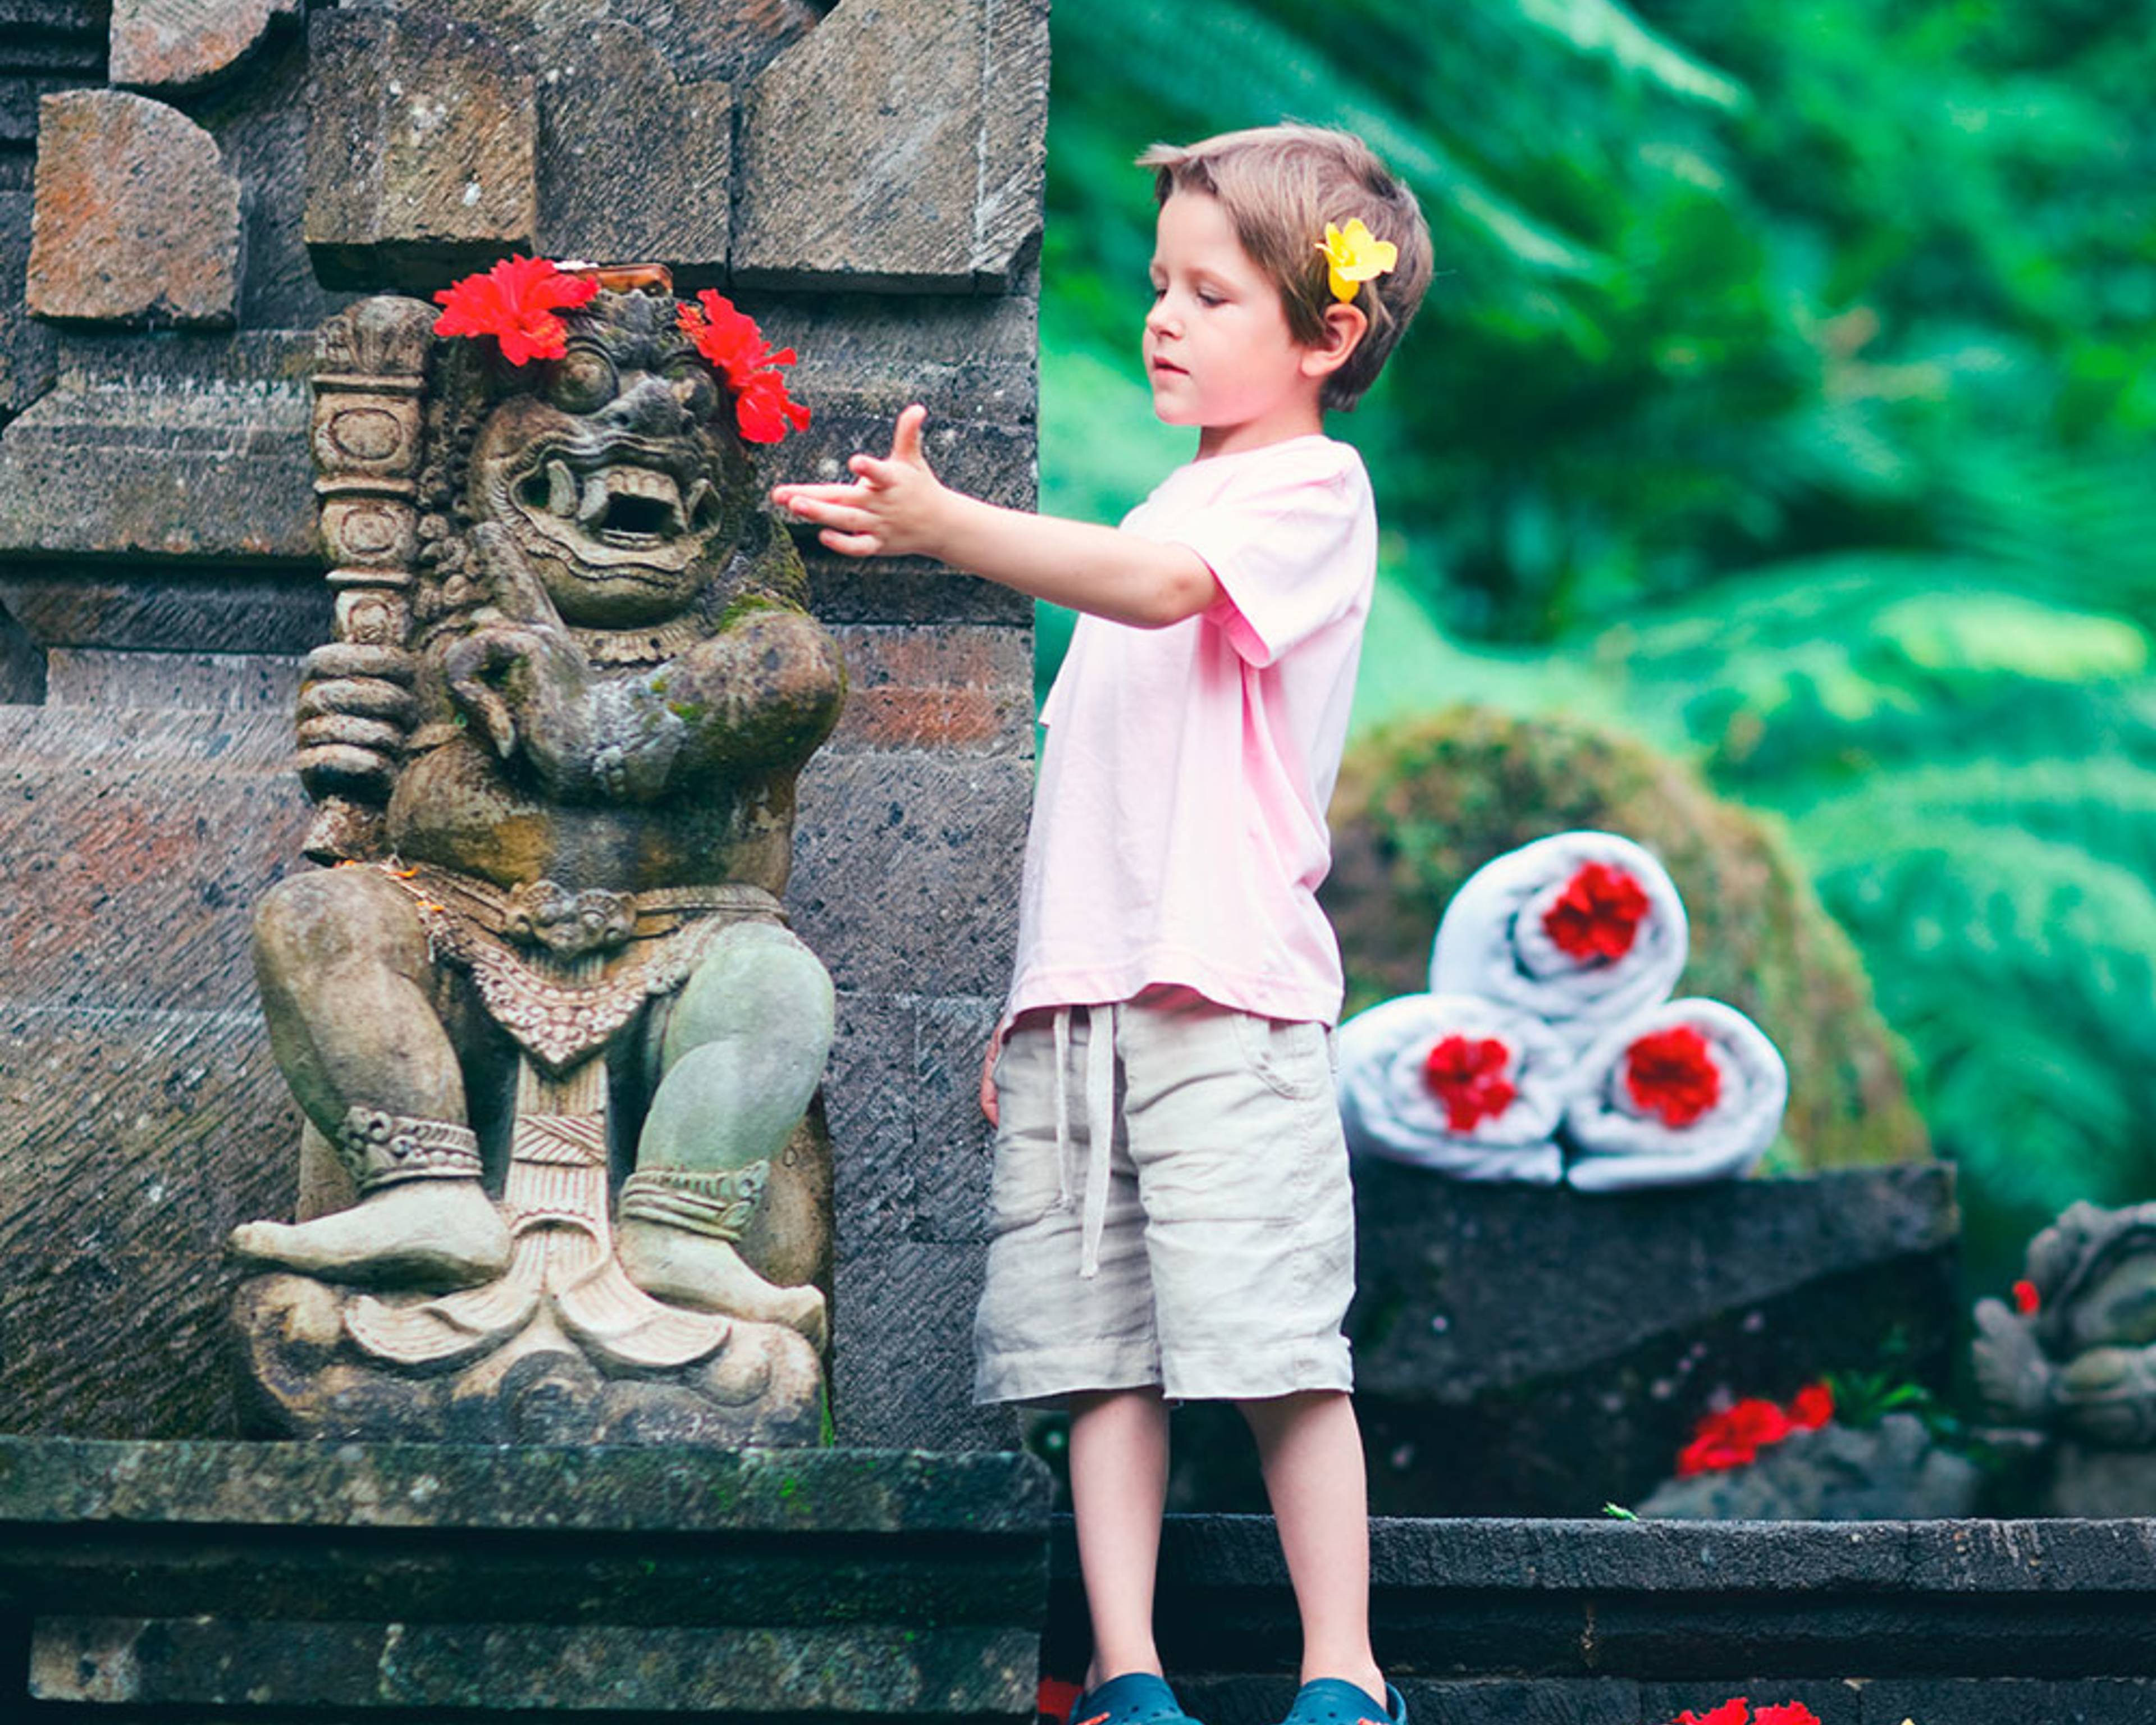 Votre voyage à Bali avec enfants 100% sur mesure